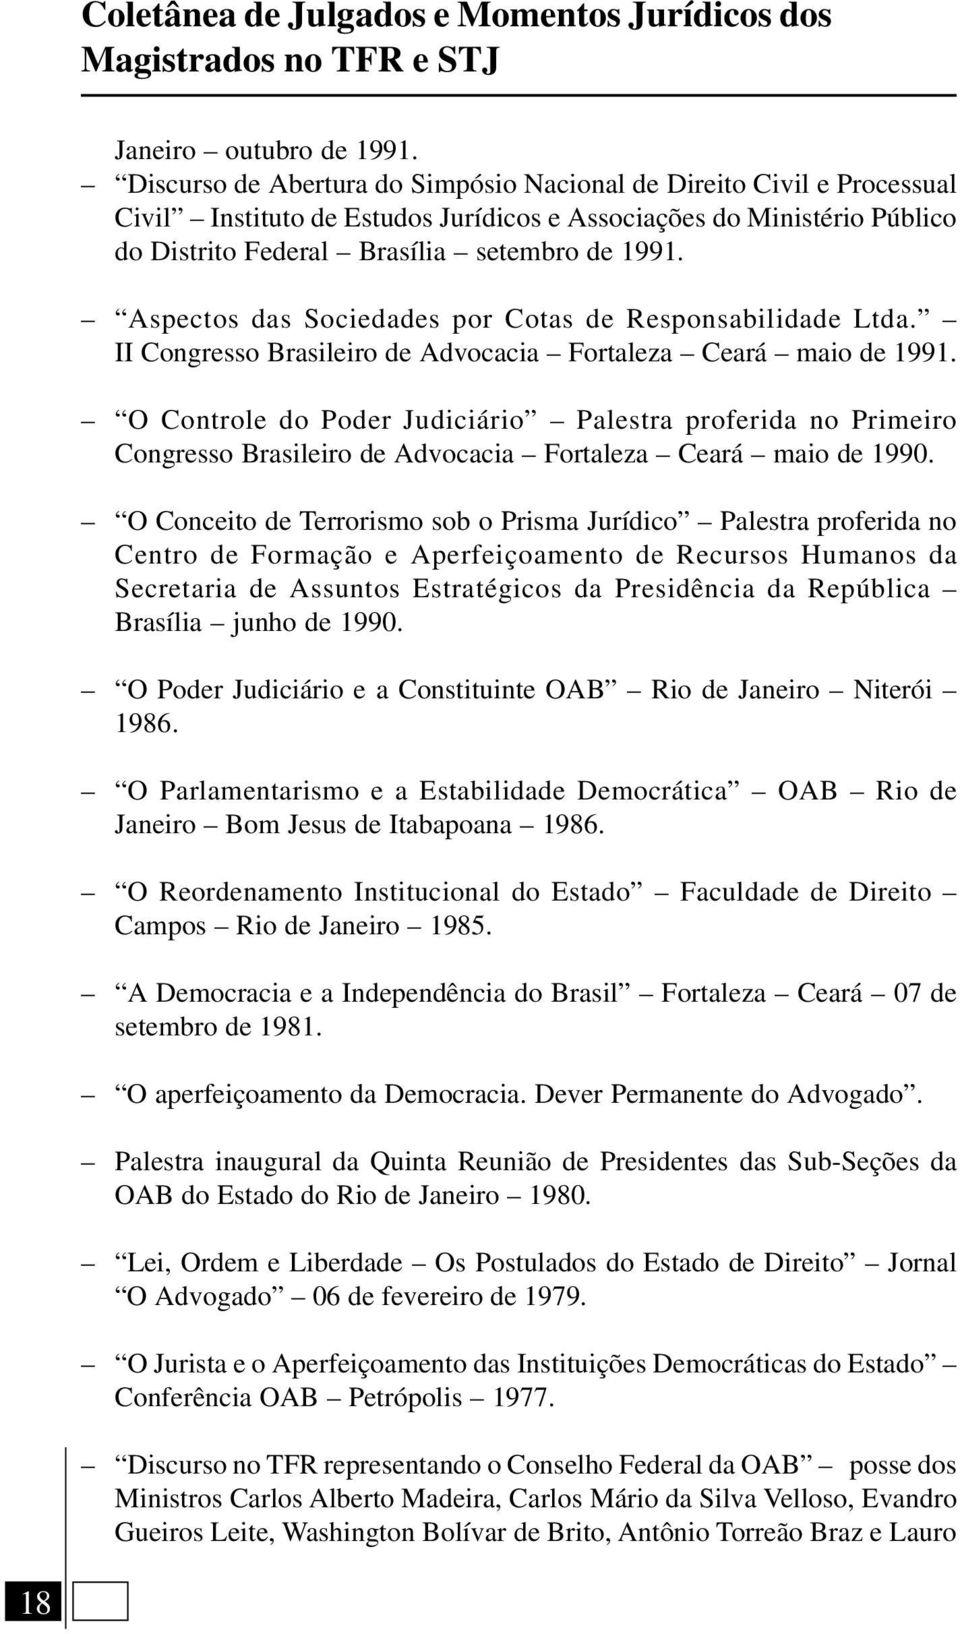 Aspectos das Sociedades por Cotas de Responsabilidade Ltda. II Congresso Brasileiro de Advocacia Fortaleza Ceará maio de 1991.